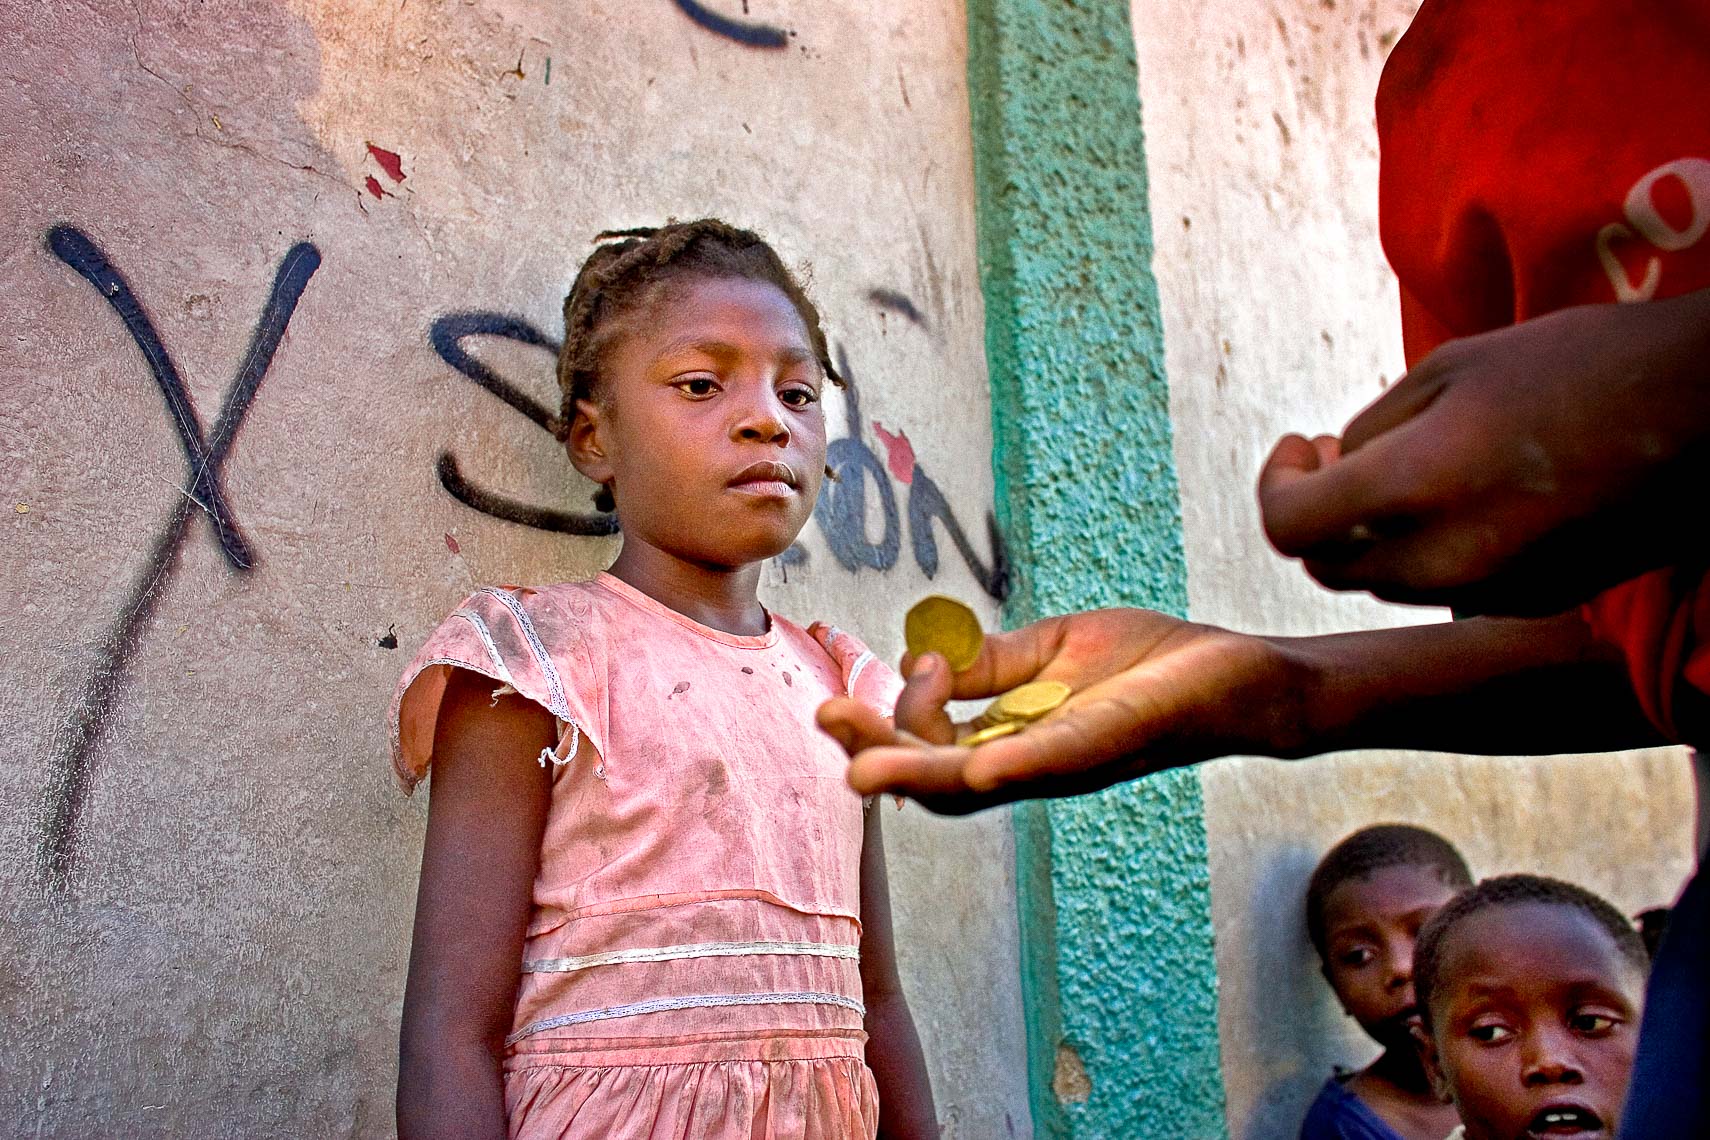 port a prince haiti street kid gng orphan receives coin